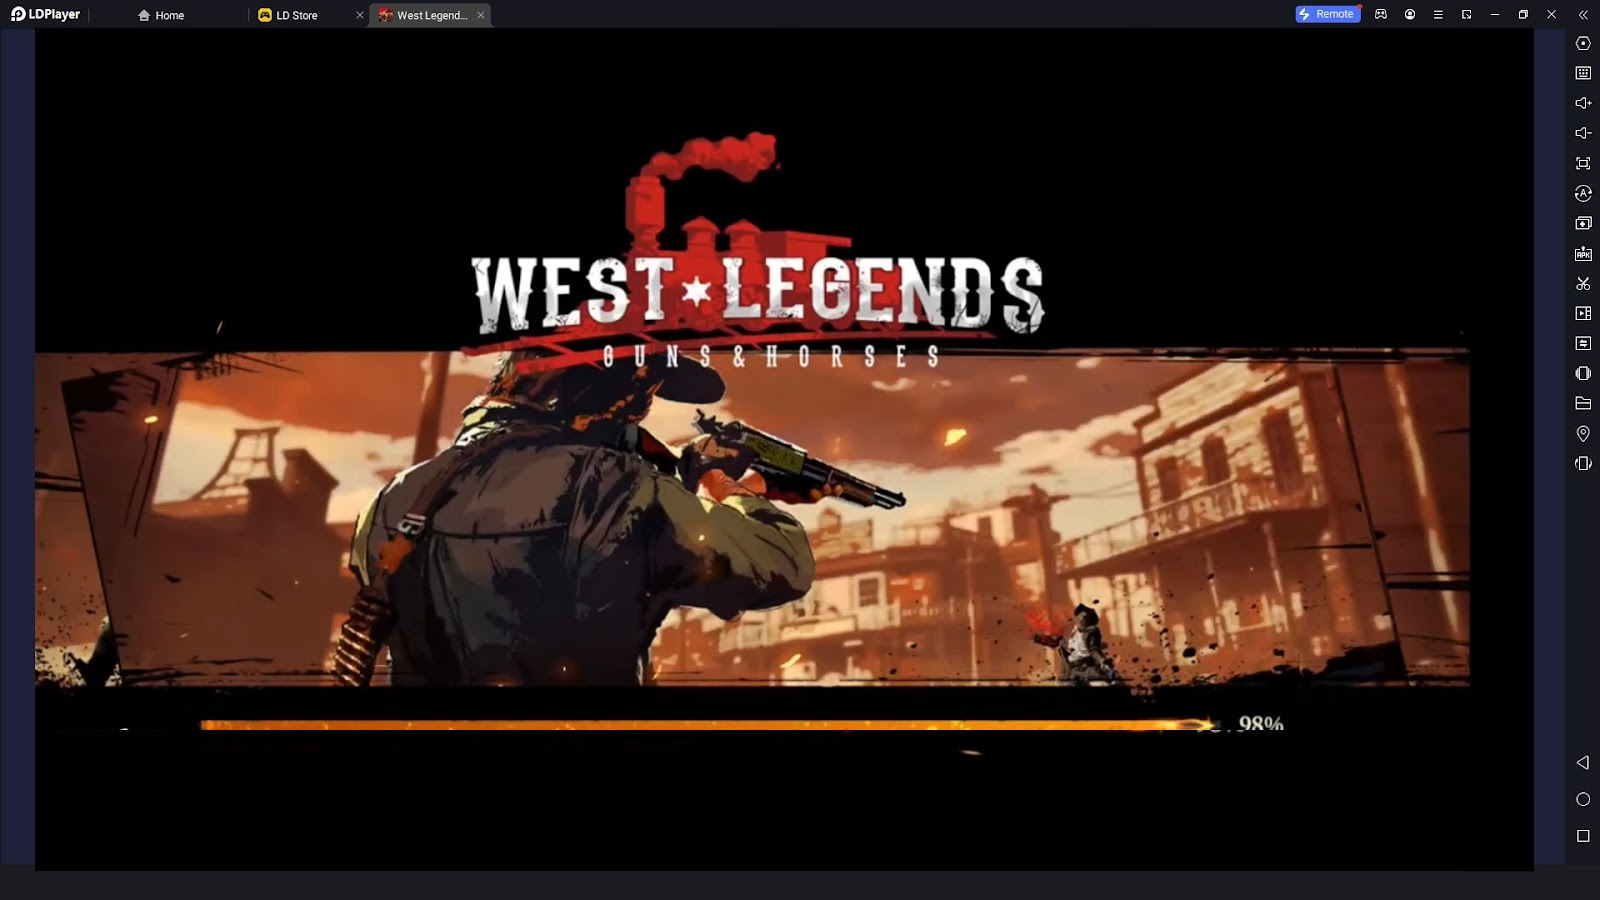 West Legends: Guns & Horses - A Beginner's Guide